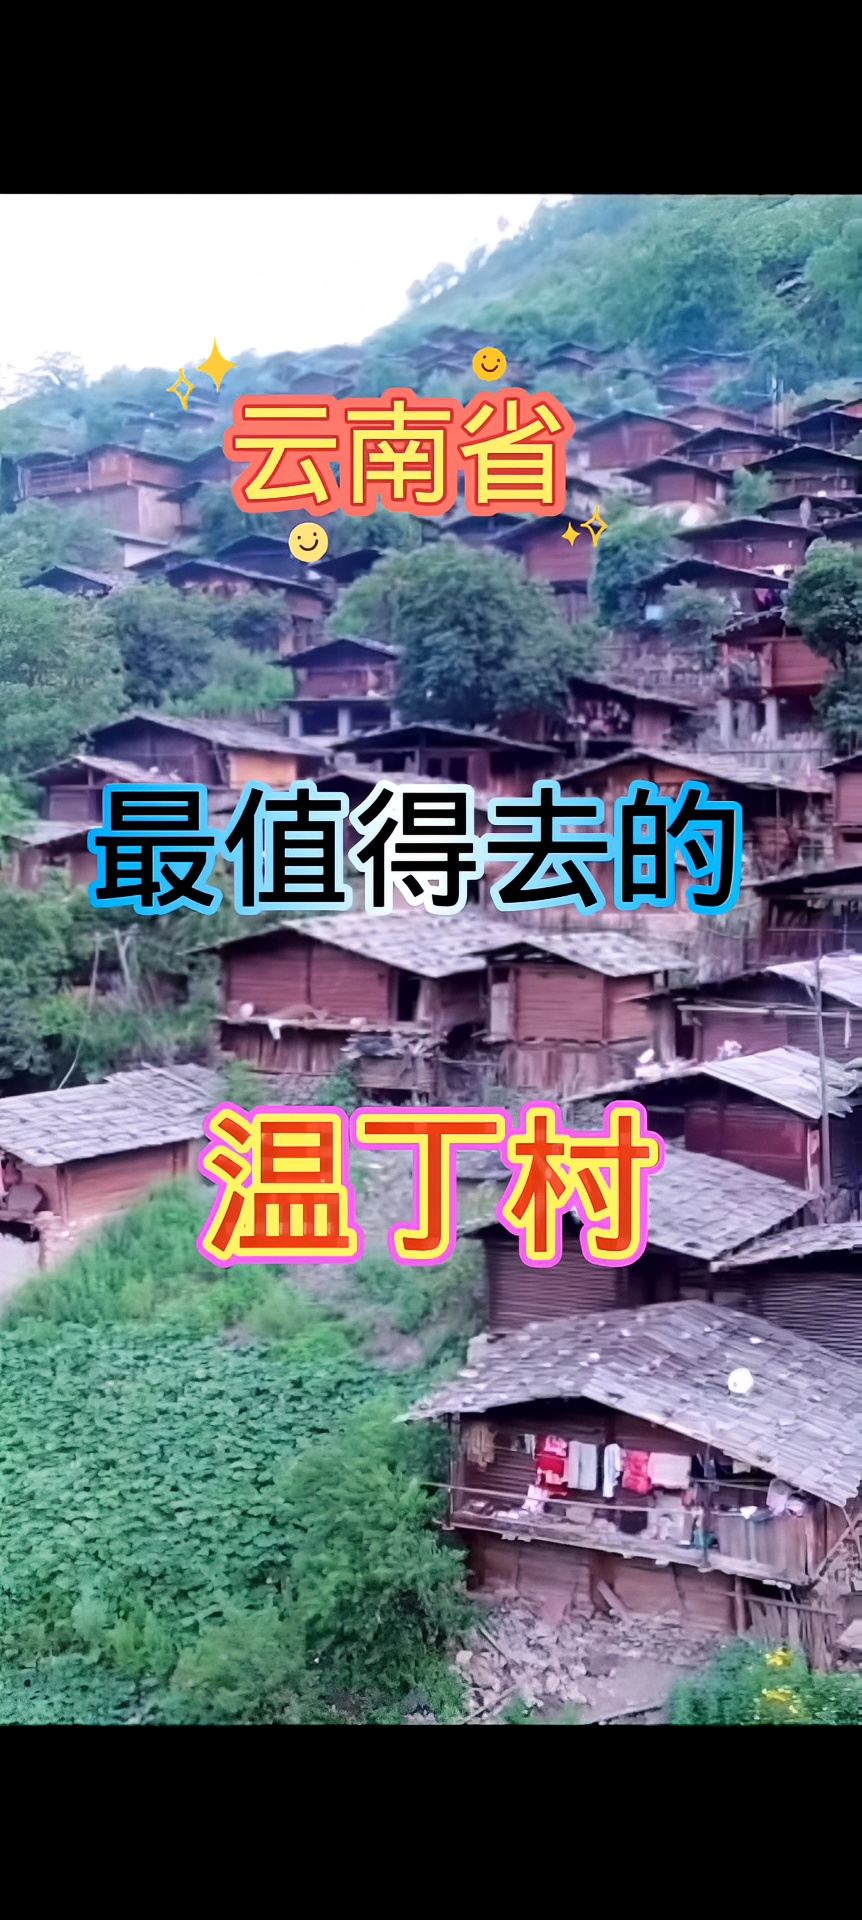 中国云南省温丁村部落。